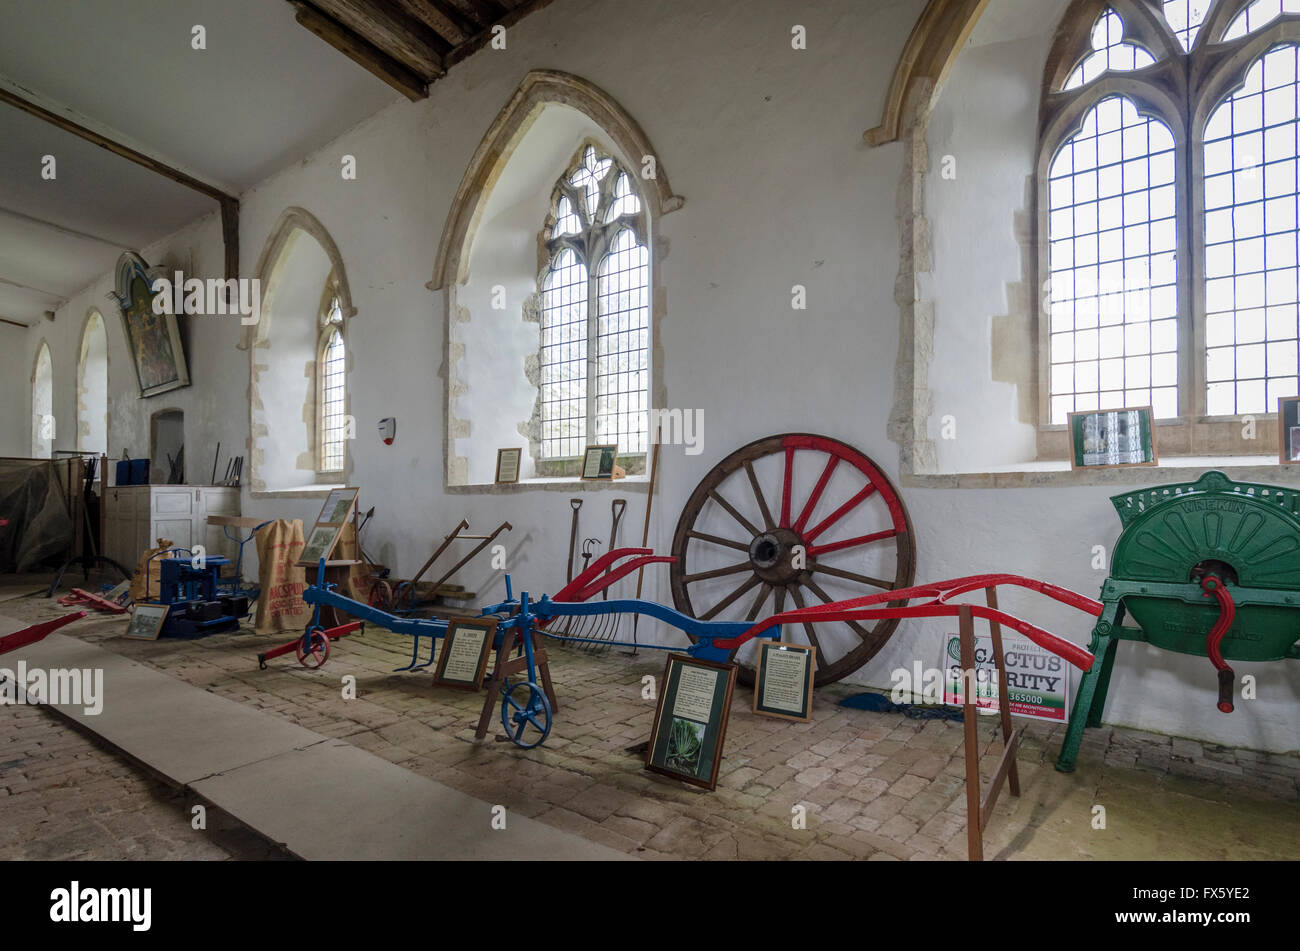 Divers équipements agricoles antiques sur l'affichage à l'intérieur d'une église Banque D'Images